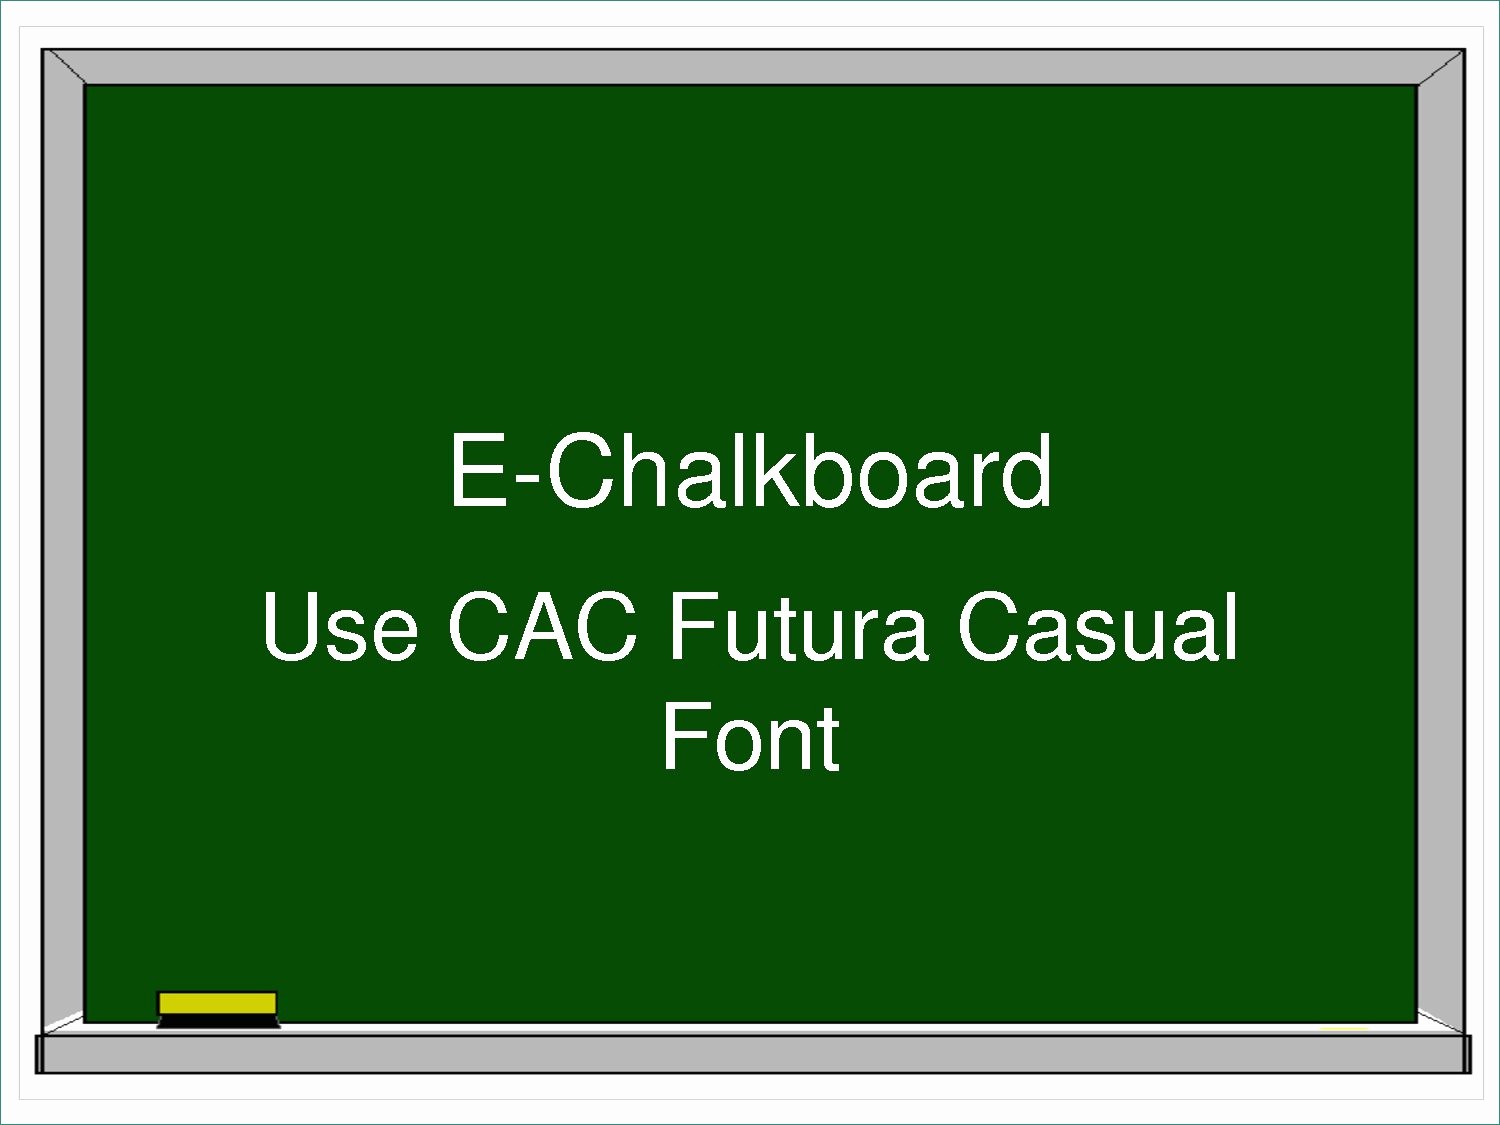 Chalkboard Powerpoint Template Free Download Beautiful Chalkboard Powerpoint Template Free Advanced Chalkboard